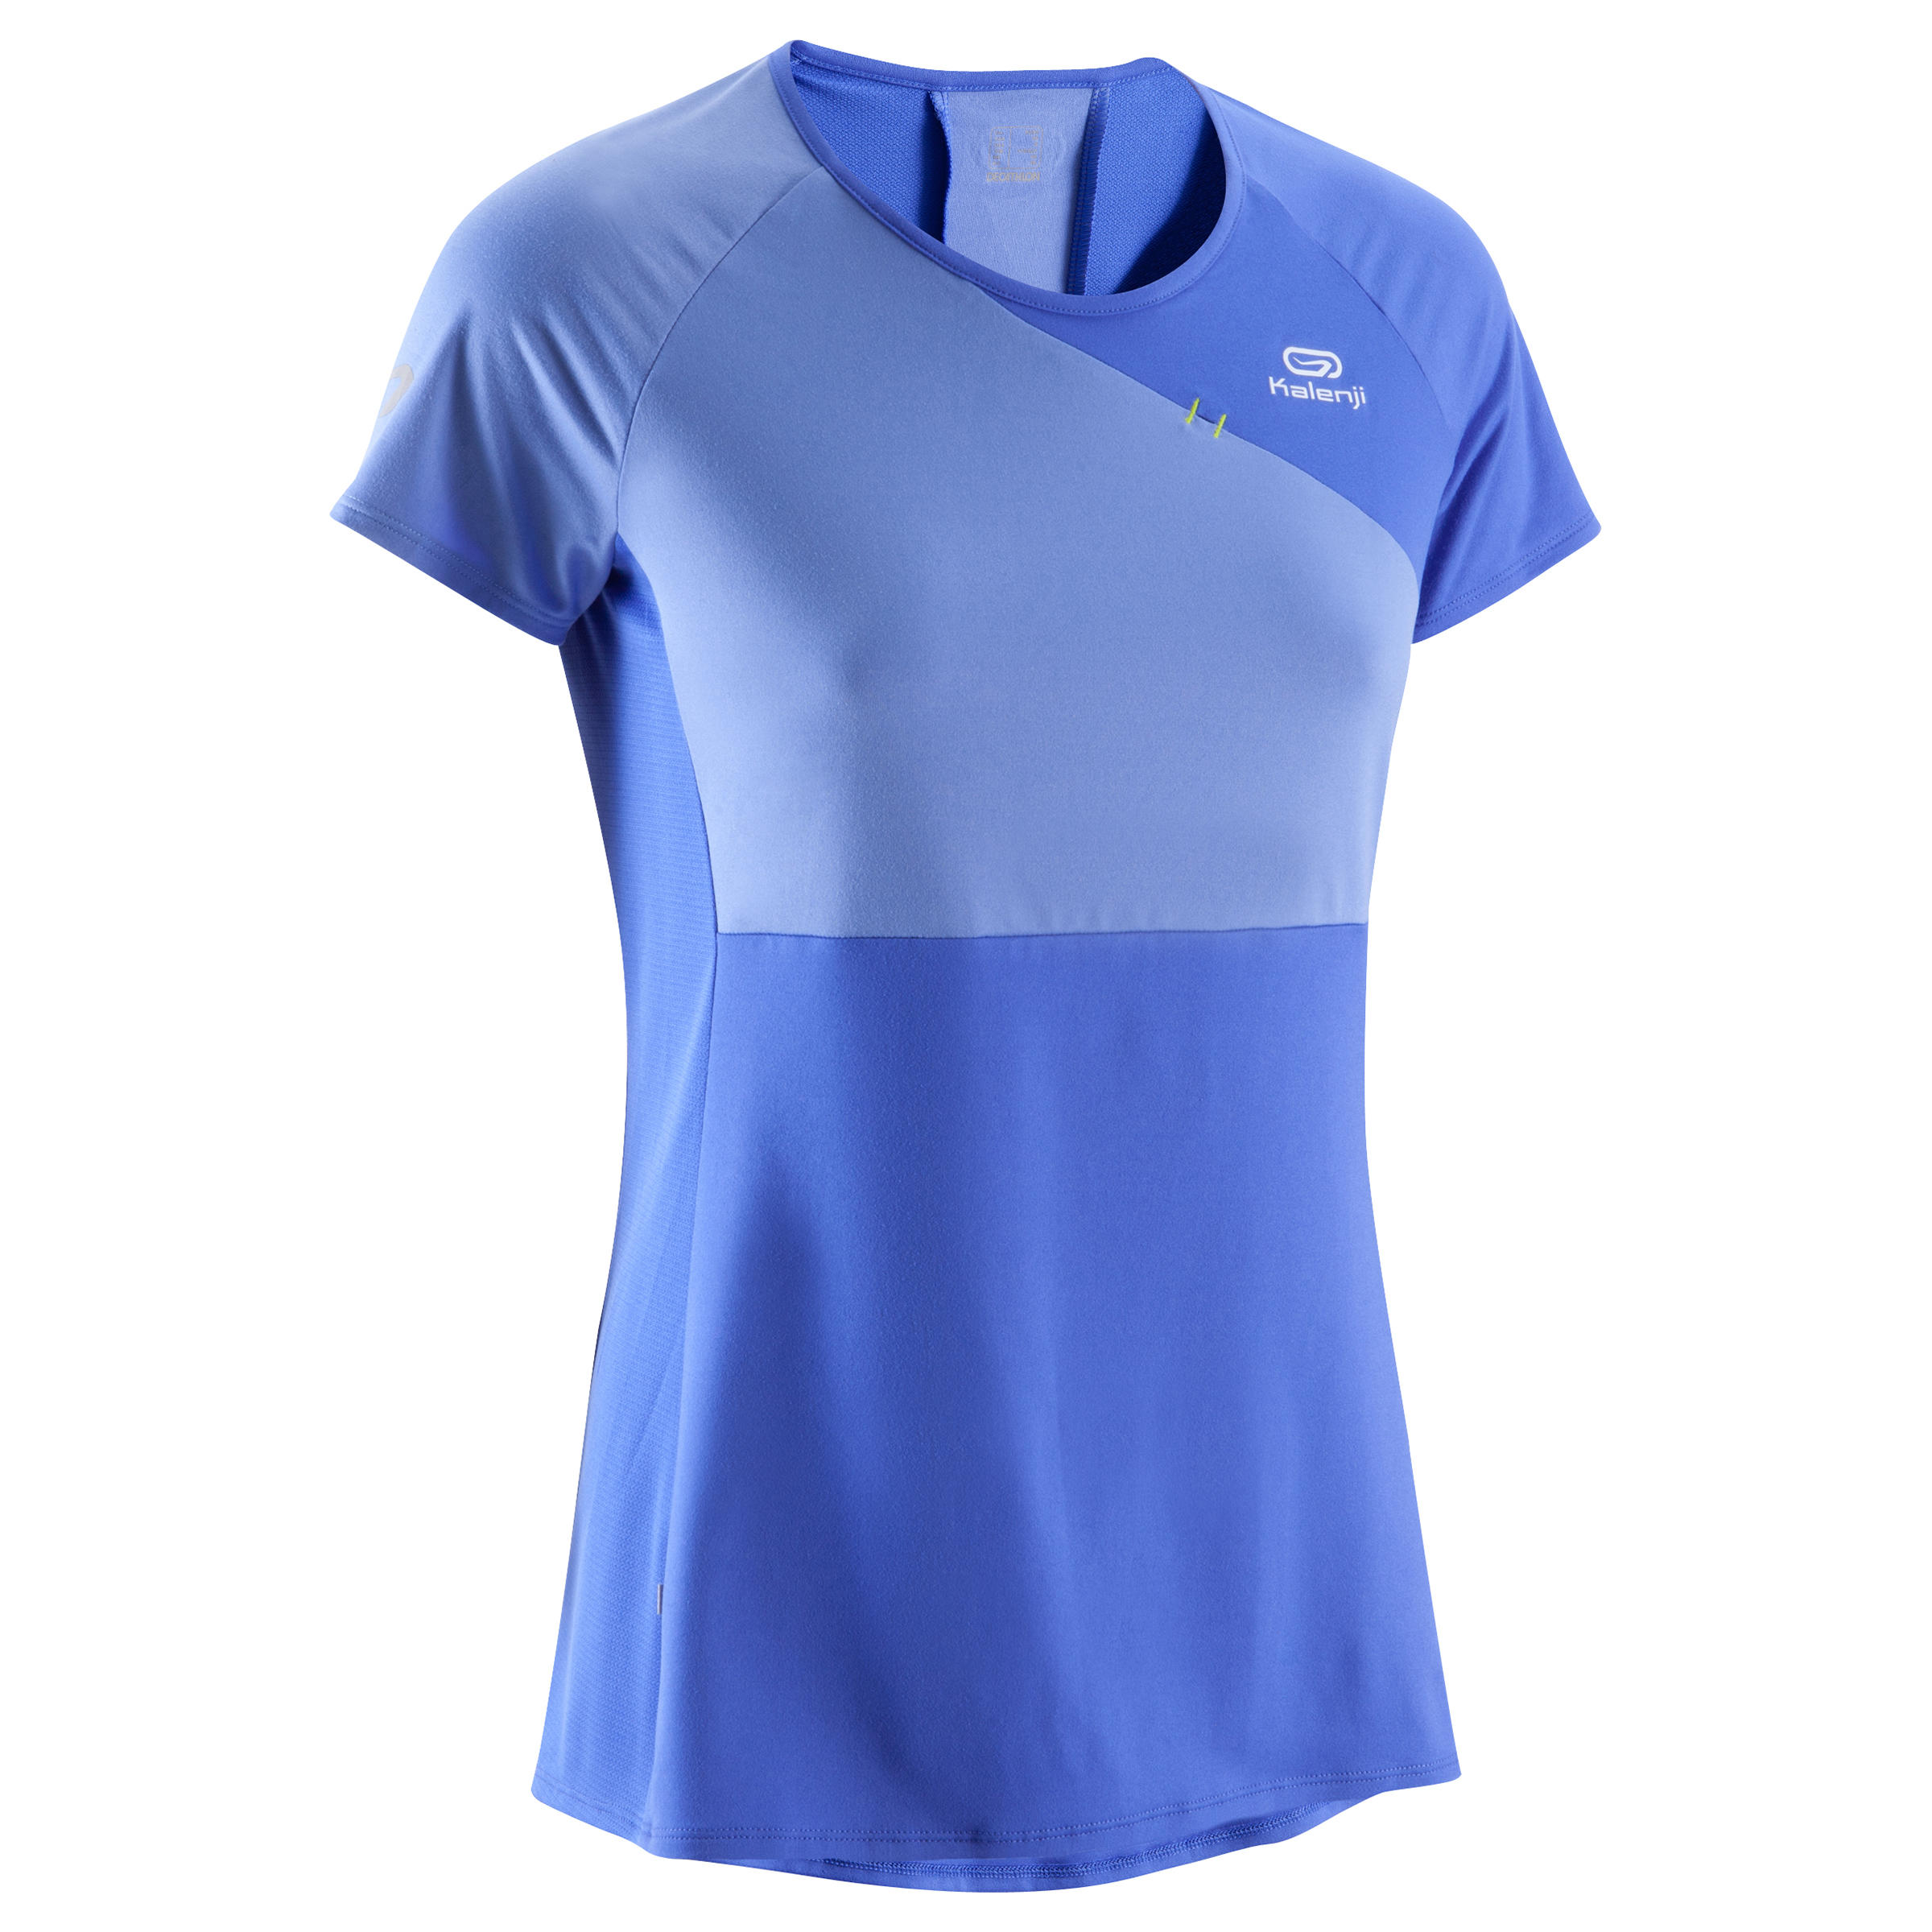 KALENJI Women's Running T-shirt - Blue